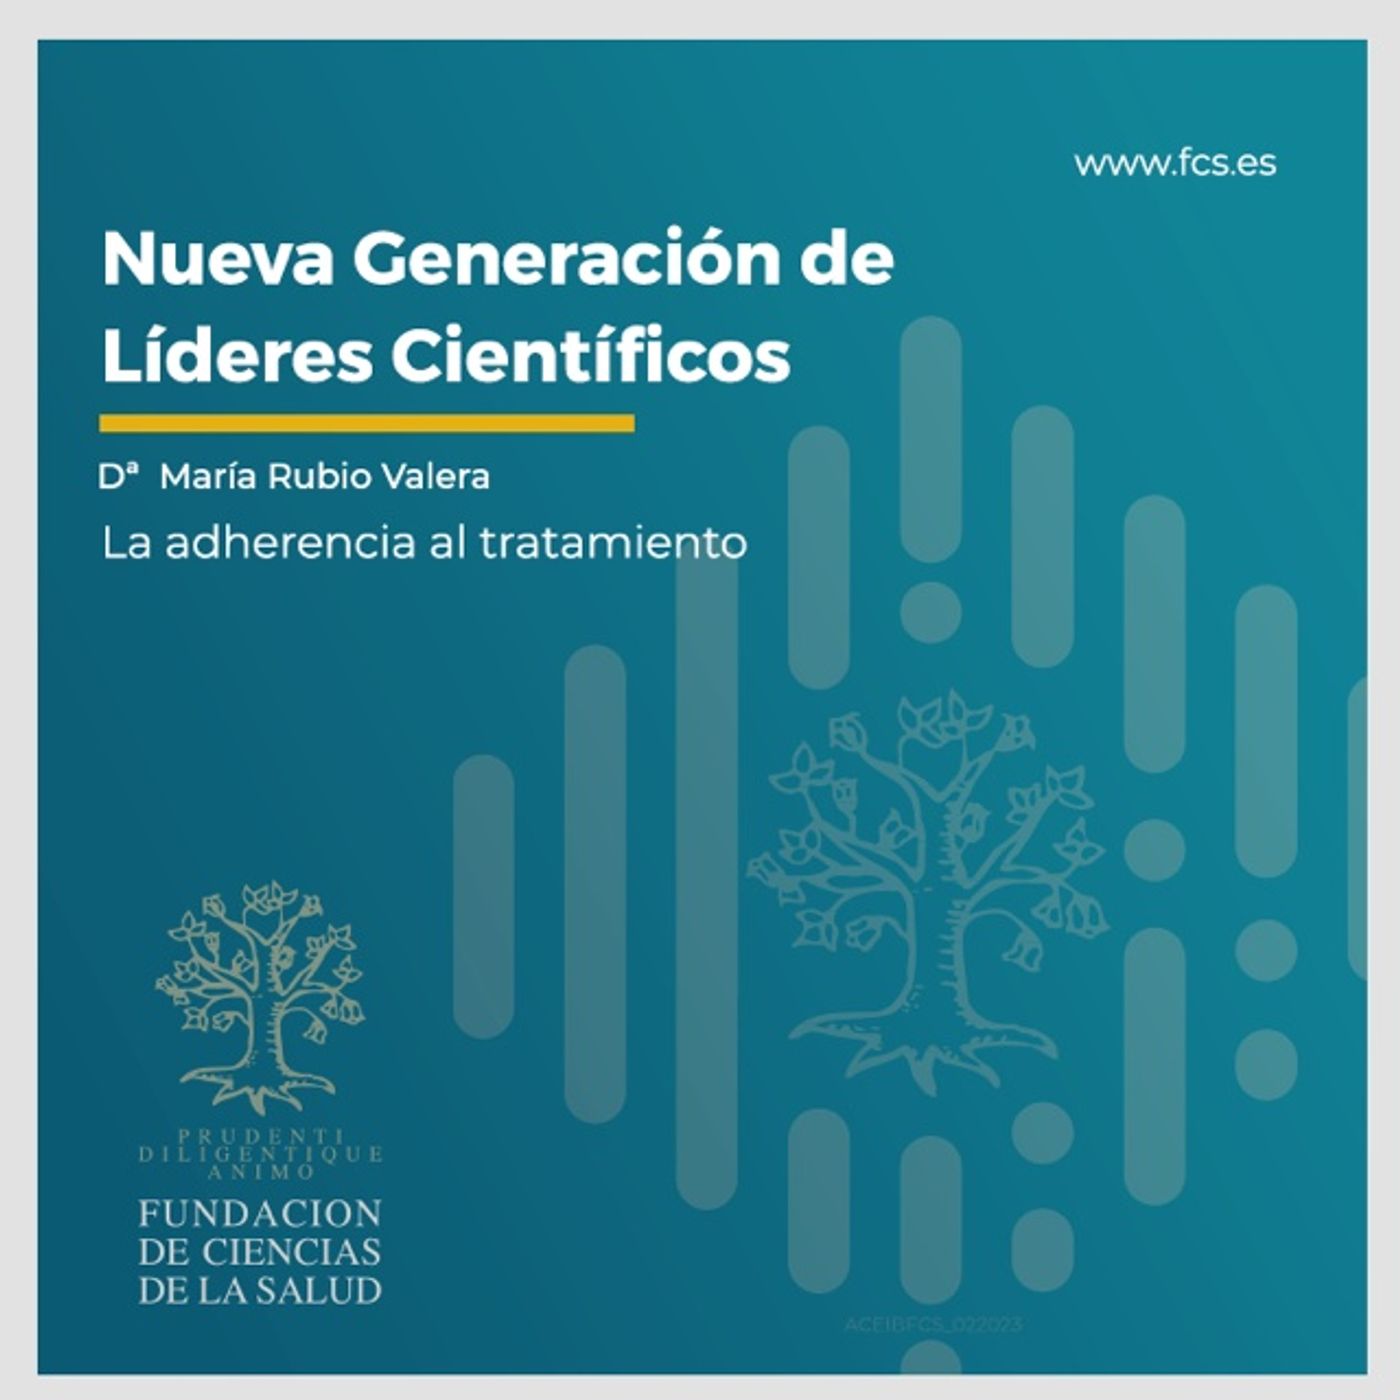 Sesión VIII. "La adherencia al tratamiento". Dª. María Rubio Valera